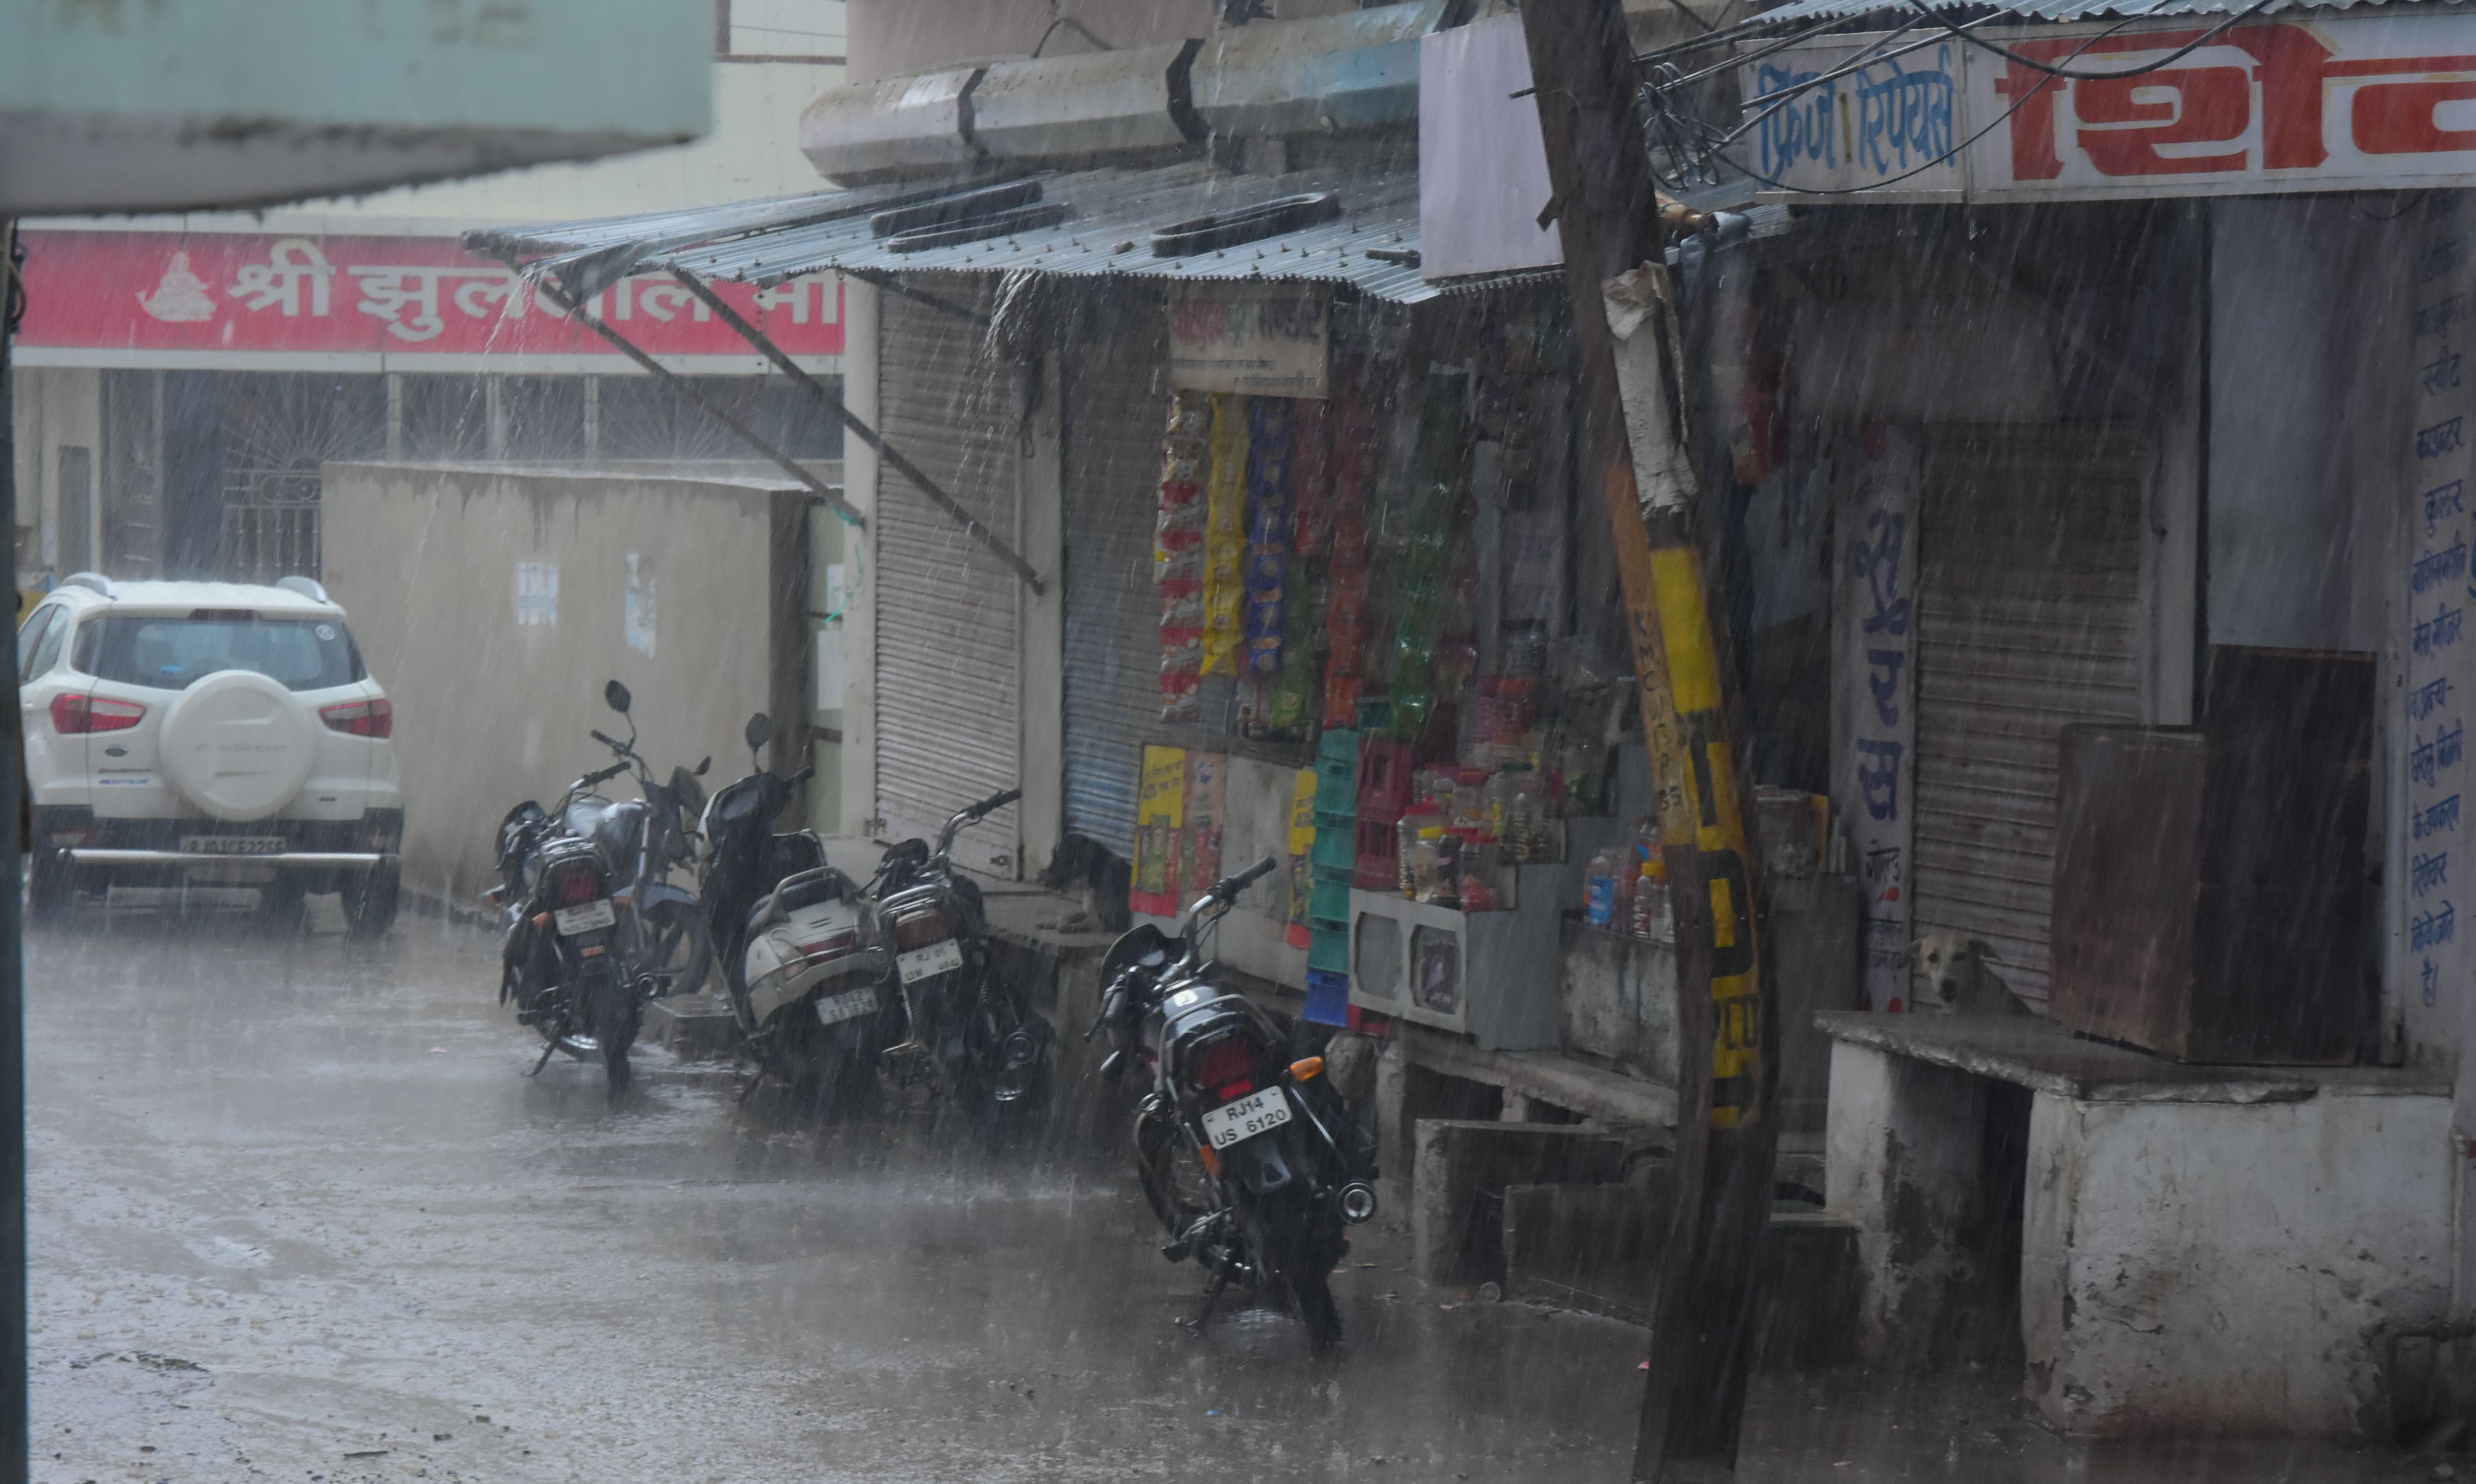 10 minutes rain in Kishangarh